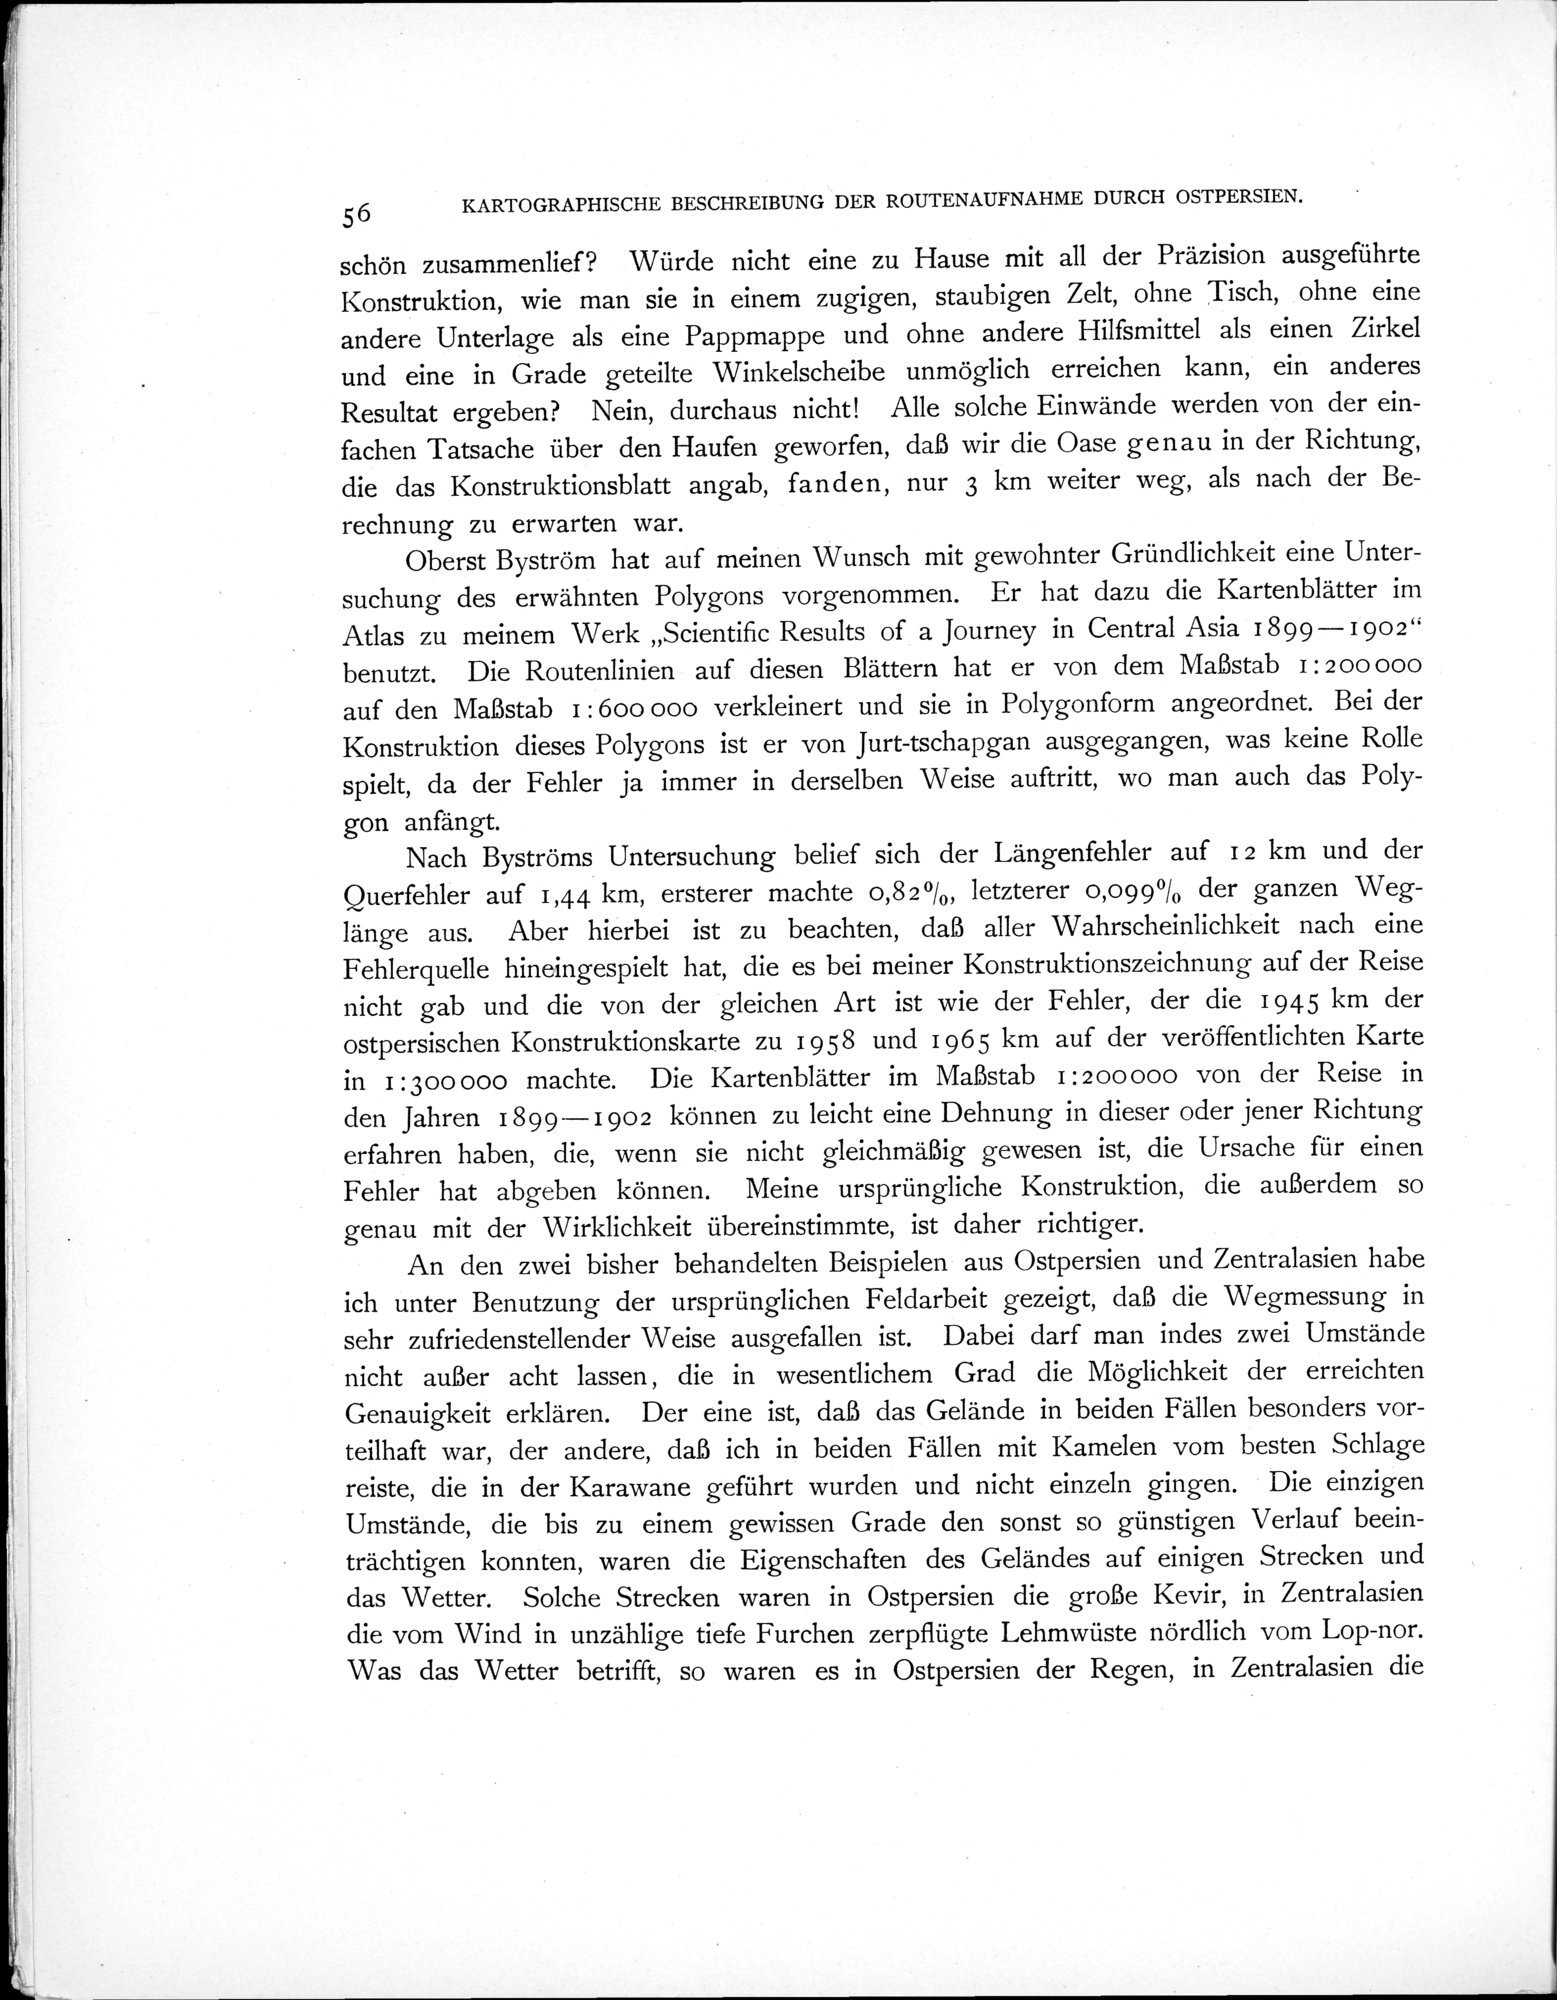 Eine Routenaufnahme durch Ostpersien : vol.2 / Page 108 (Grayscale High Resolution Image)